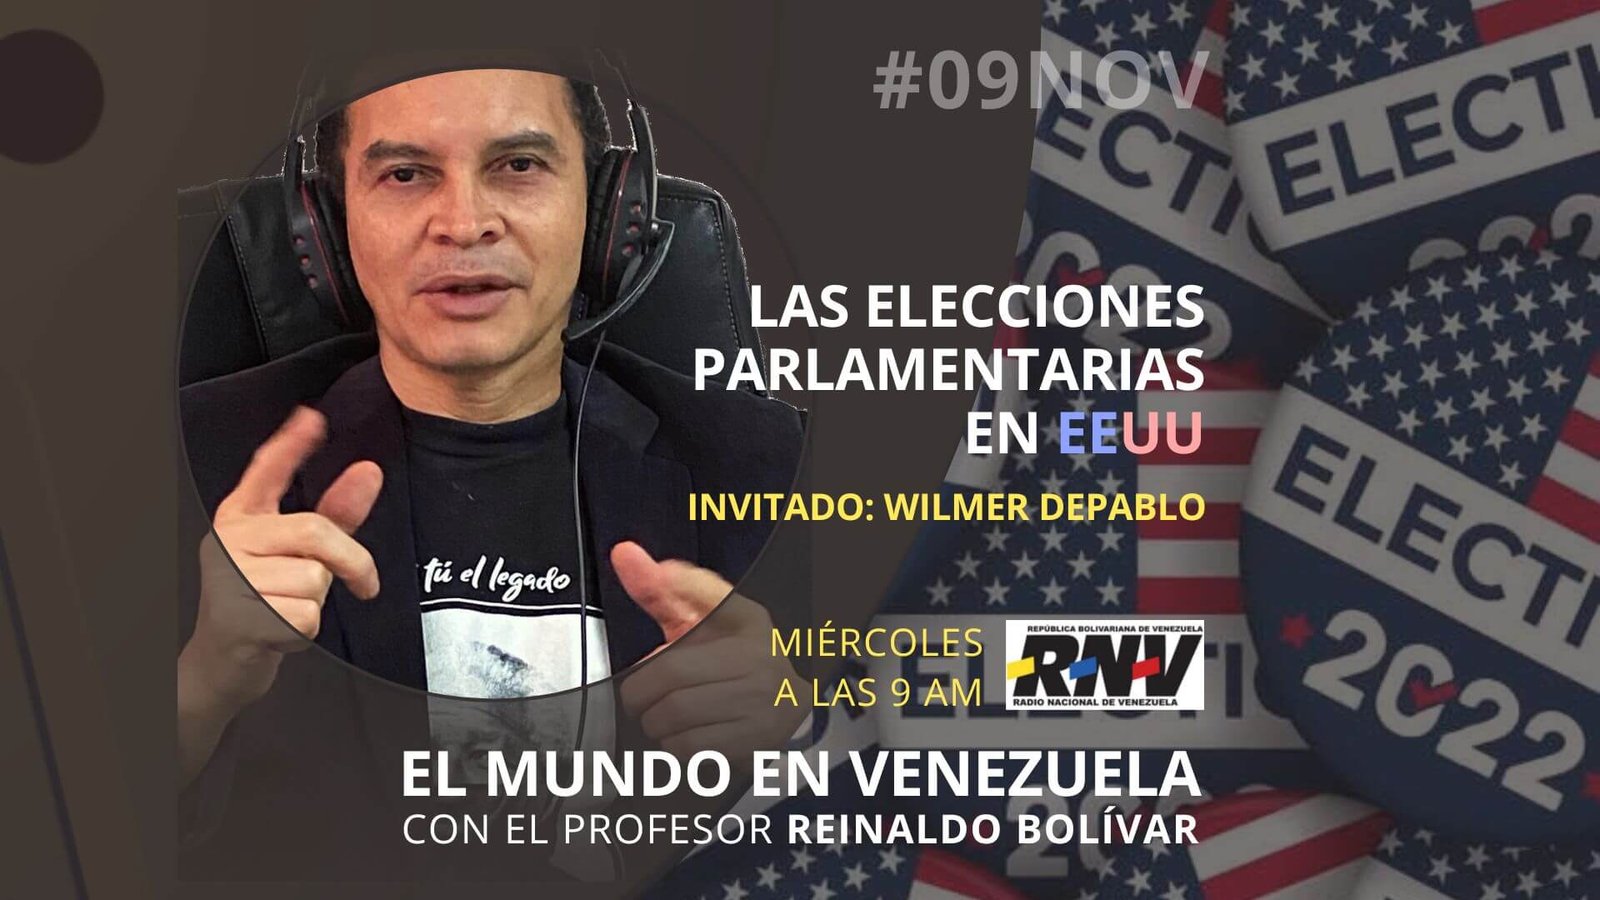 - Escucha el programa de El Mundo en Venezuela - #09nov 2022 - 